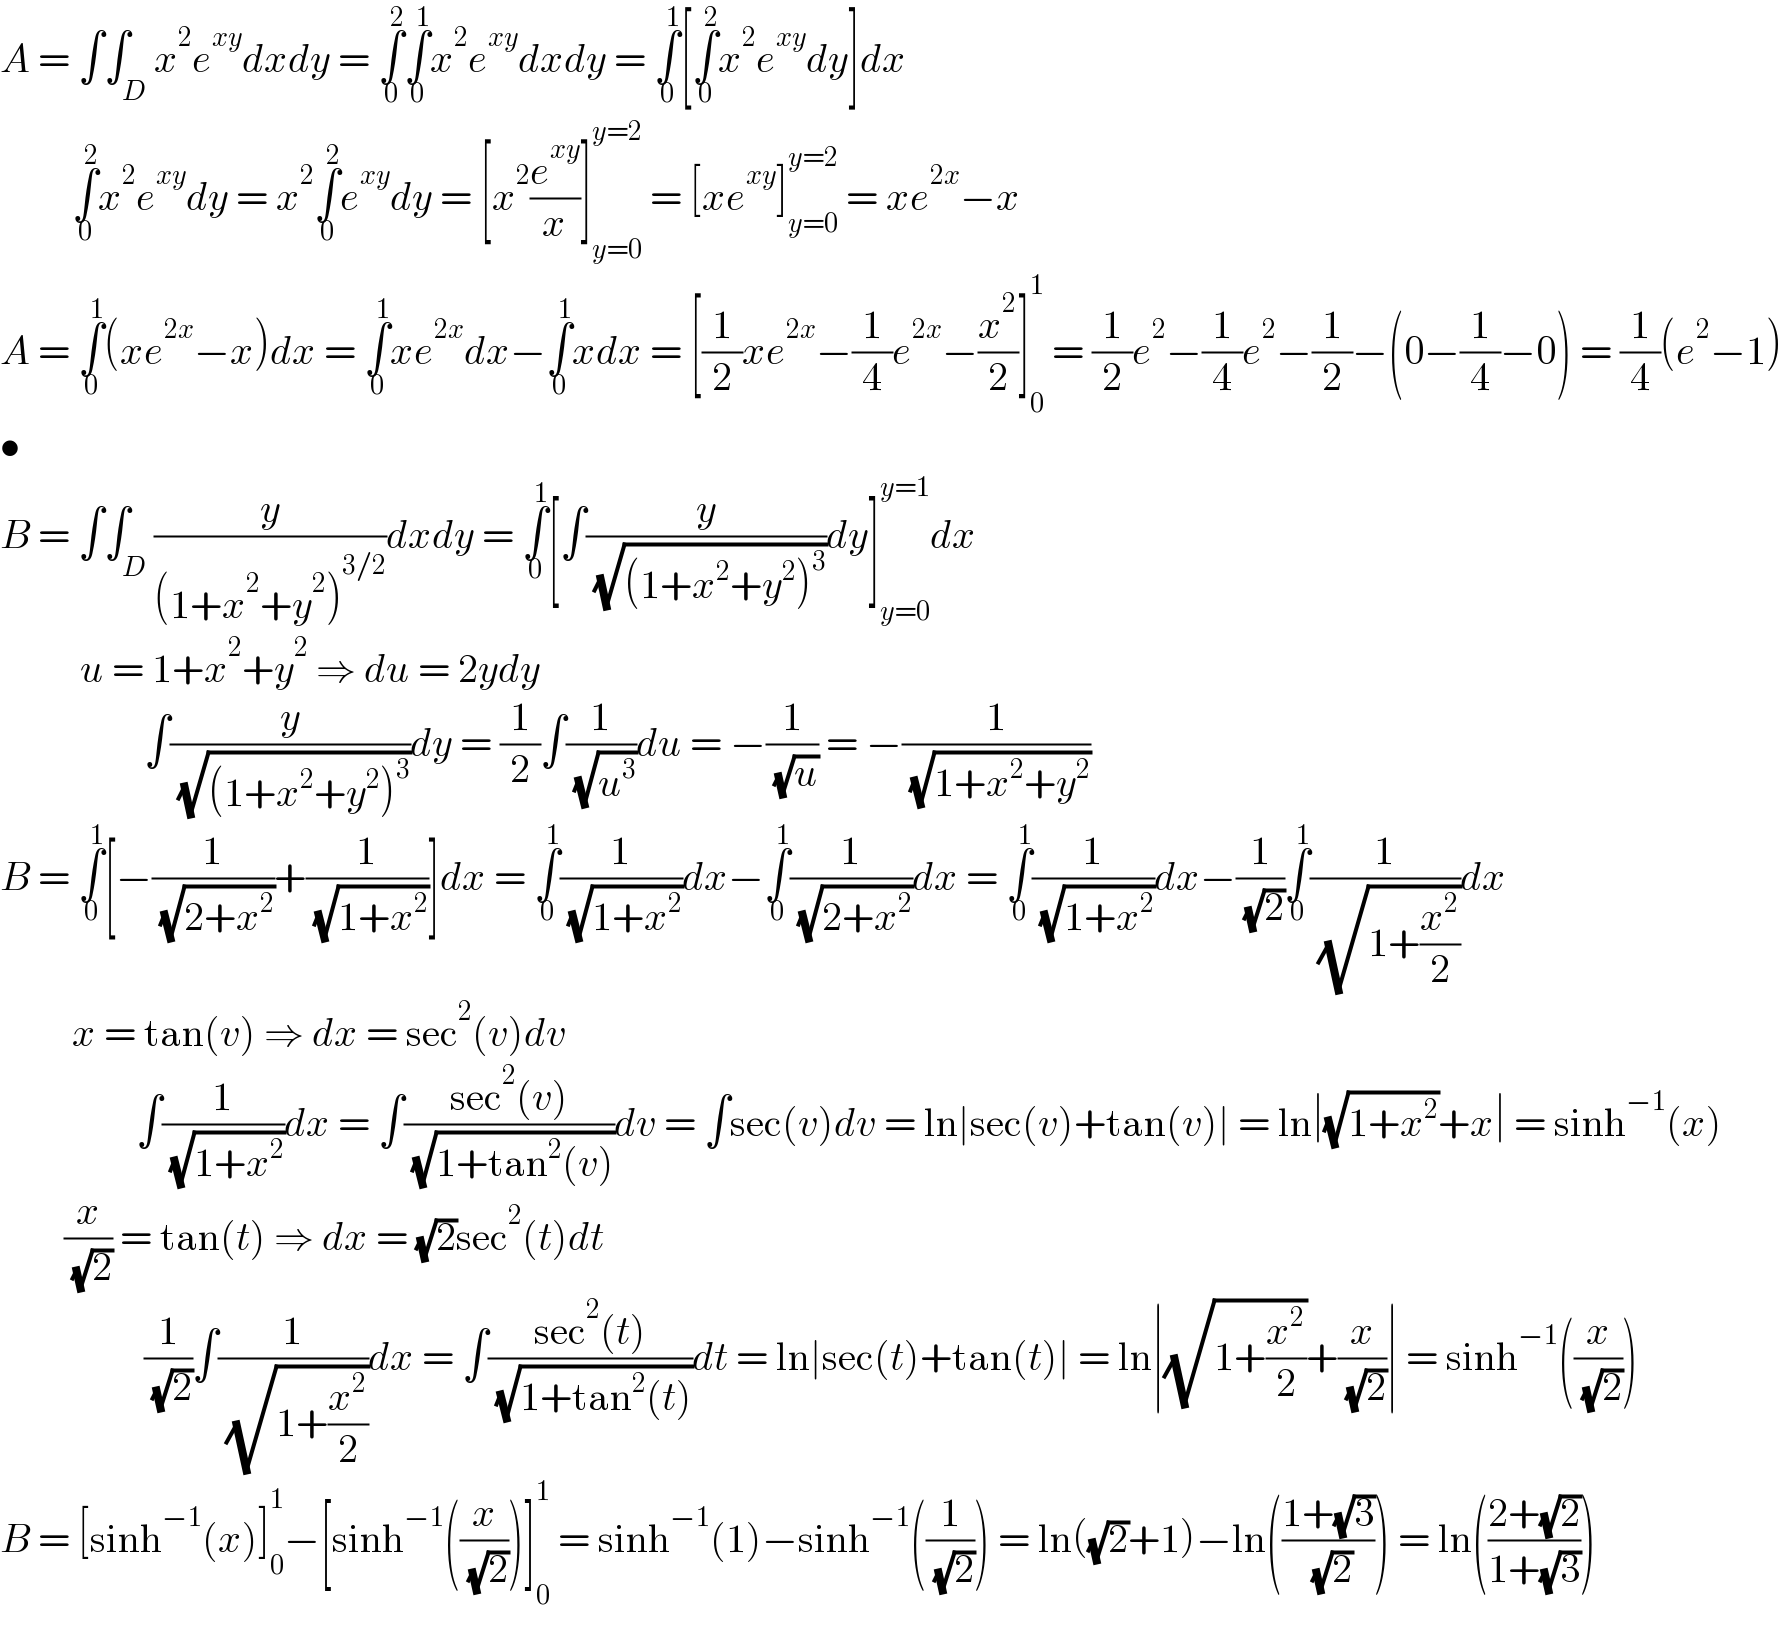 A = ∫∫_D x^2 e^(xy) dxdy = ∫_0 ^2 ∫_0 ^1 x^2 e^(xy) dxdy = ∫_0 ^1 [∫_0 ^2 x^2 e^(xy) dy]dx           ∫_0 ^2 x^2 e^(xy) dy = x^2 ∫_0 ^2 e^(xy) dy = [x^2 (e^(xy) /x)]_(y=0) ^(y=2)  = [xe^(xy) ]_(y=0) ^(y=2)  = xe^(2x) −x  A = ∫_0 ^1 (xe^(2x) −x)dx = ∫_0 ^1 xe^(2x) dx−∫_0 ^1 xdx = [(1/2)xe^(2x) −(1/4)e^(2x) −(x^2 /2)]_0 ^1  = (1/2)e^2 −(1/4)e^2 −(1/2)−(0−(1/4)−0) = (1/4)(e^2 −1)  •  B = ∫∫_D (y/((1+x^2 +y^2 )^(3/2) ))dxdy = ∫_0 ^1 [∫(y/( (√((1+x^2 +y^2 )^3 ))))dy]_(y=0) ^(y=1) dx            u = 1+x^2 +y^2  ⇒ du = 2ydy                      ∫(y/( (√((1+x^2 +y^2 )^3 ))))dy = (1/2)∫(1/( (√u^3 )))du = −(1/( (√u))) = −(1/( (√(1+x^2 +y^2 ))))  B = ∫_0 ^1 [−(1/( (√(2+x^2 ))))+(1/( (√(1+x^2 ))))]dx = ∫_0 ^1 (1/( (√(1+x^2 ))))dx−∫_0 ^1 (1/( (√(2+x^2 ))))dx = ∫_0 ^1 (1/( (√(1+x^2 ))))dx−(1/( (√2)))∫_0 ^1 (1/( (√(1+(x^2 /2)))))dx           x = tan(v) ⇒ dx = sec^2 (v)dv                   ∫(1/( (√(1+x^2 ))))dx = ∫((sec^2 (v))/( (√(1+tan^2 (v)))))dv = ∫sec(v)dv = ln∣sec(v)+tan(v)∣ = ln∣(√(1+x^2 ))+x∣ = sinh^(−1) (x)          (x/( (√2))) = tan(t) ⇒ dx = (√2)sec^2 (t)dt                    (1/( (√2)))∫(1/( (√(1+(x^2 /2)))))dx = ∫((sec^2 (t))/( (√(1+tan^2 (t)))))dt = ln∣sec(t)+tan(t)∣ = ln∣(√(1+(x^2 /2)))+(x/( (√2)))∣ = sinh^(−1) ((x/( (√2))))  B = [sinh^(−1) (x)]_0 ^1 −[sinh^(−1) ((x/( (√2))))]_0 ^1  = sinh^(−1) (1)−sinh^(−1) ((1/( (√2)))) = ln((√2)+1)−ln(((1+(√3))/( (√2)))) = ln(((2+(√2))/(1+(√3))))  